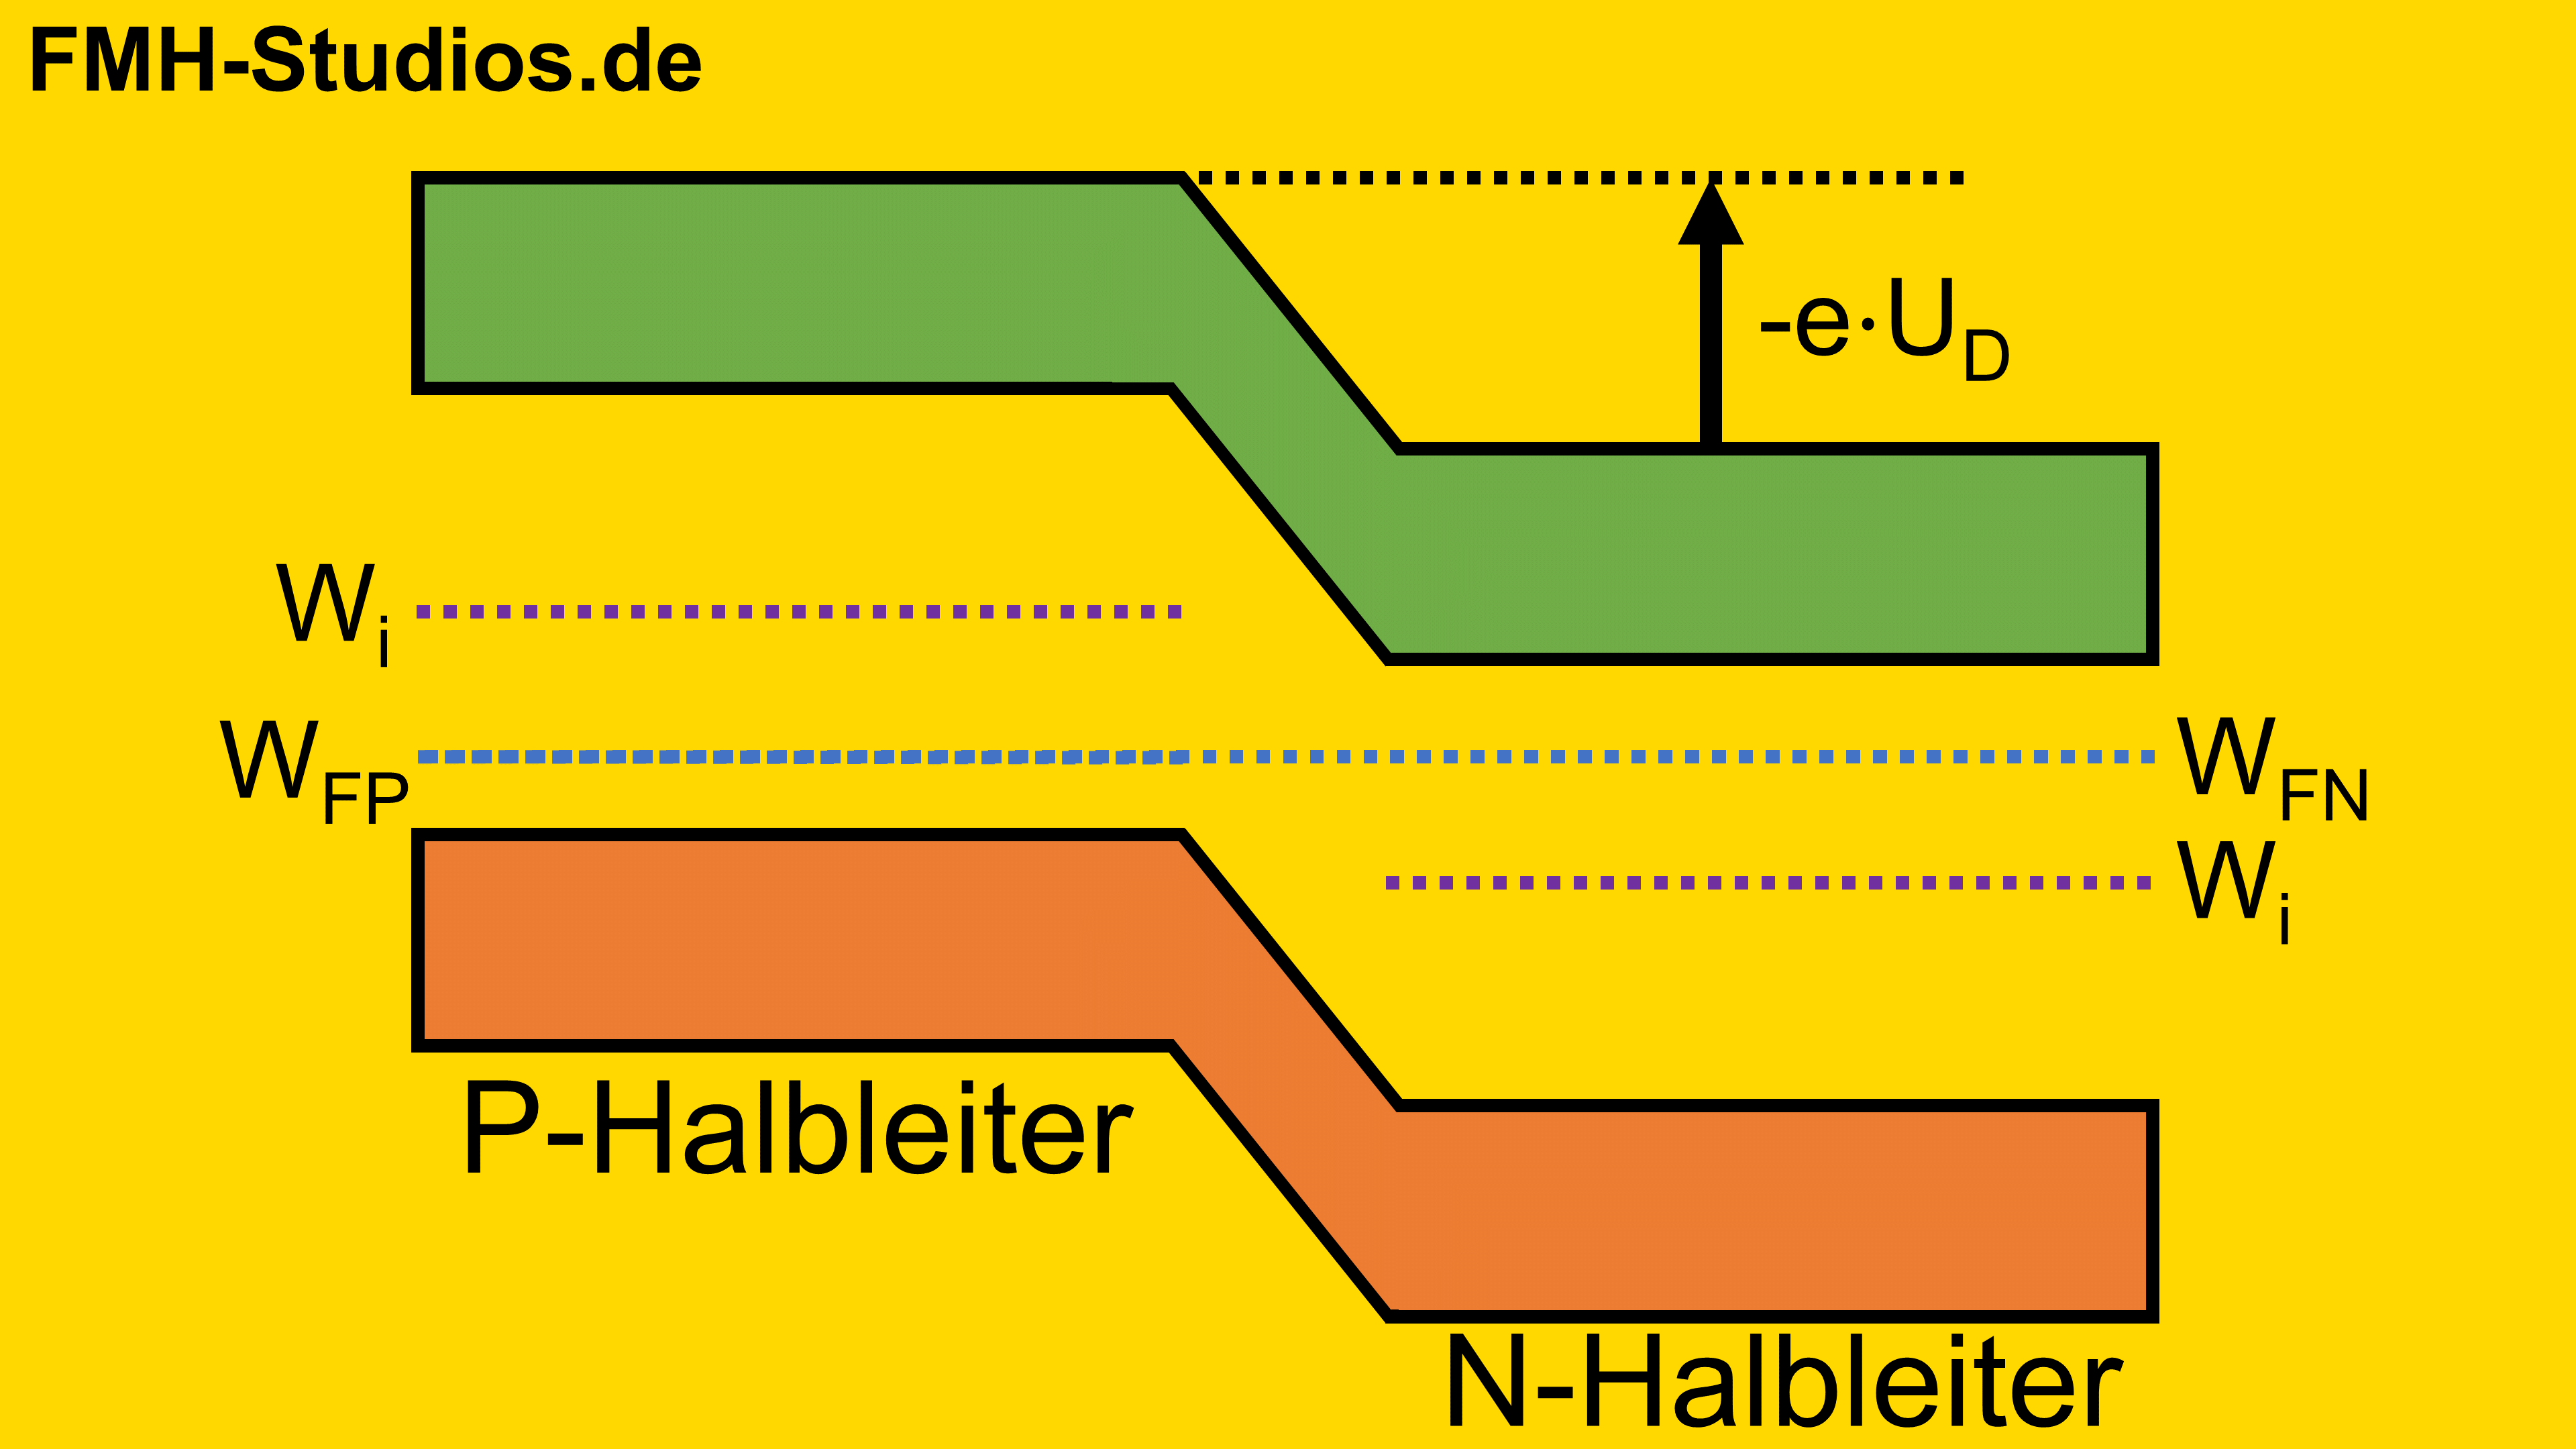 Halbleiter - Diffusionsspannung - Dotierung - PN-Übergang - Diode - dotiert - N-Halbleiter - P-Halbleiter - Elektronen - Löcher - Bändermodell - Leitungsband